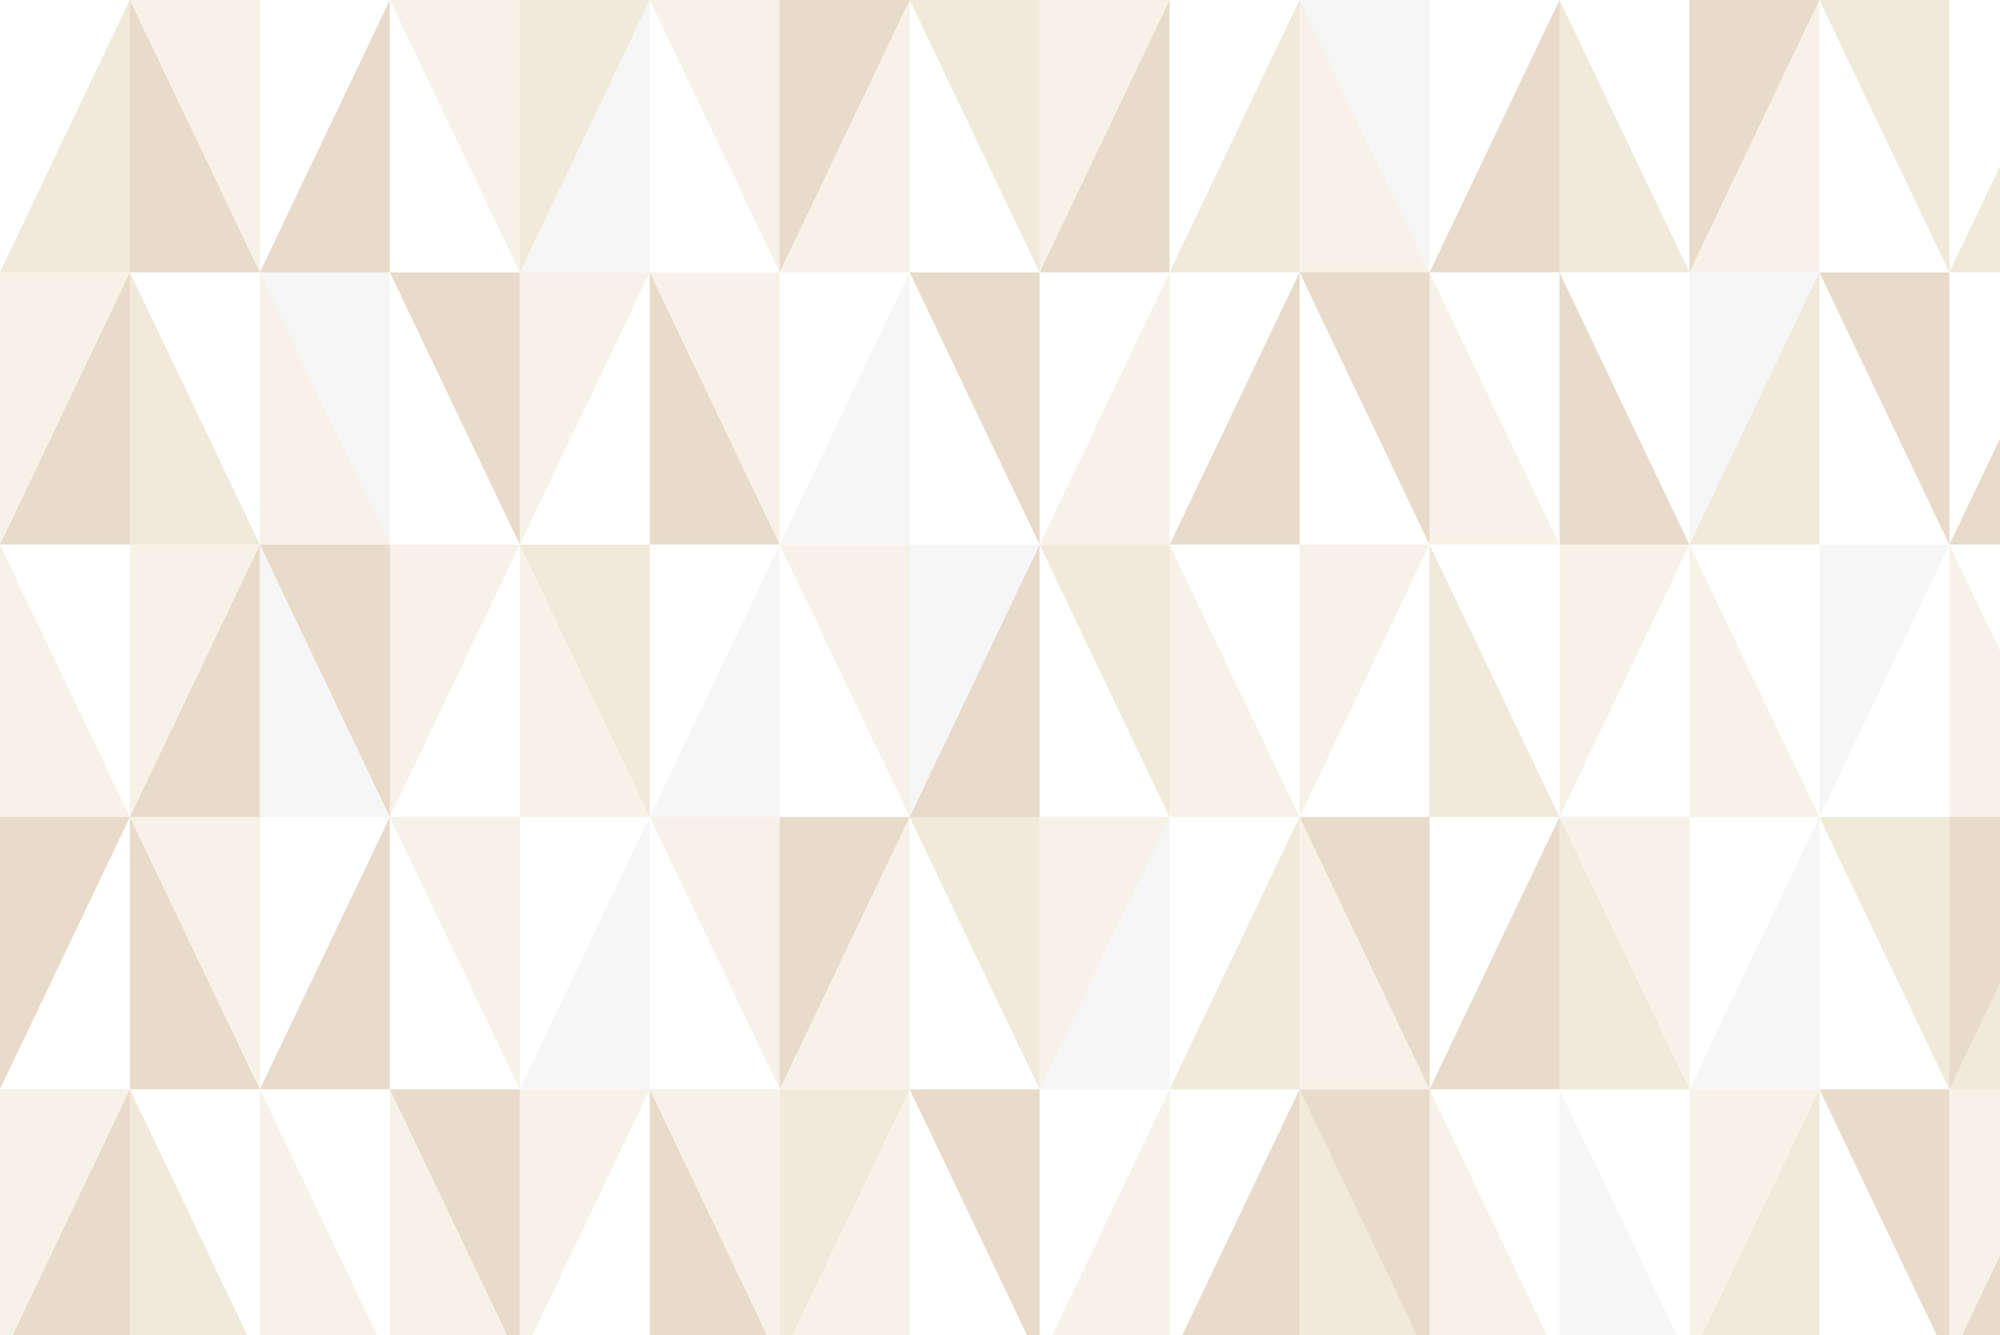             Papel pintado de diseño con pequeños triángulos de color beige sobre vellón liso de primera calidad
        